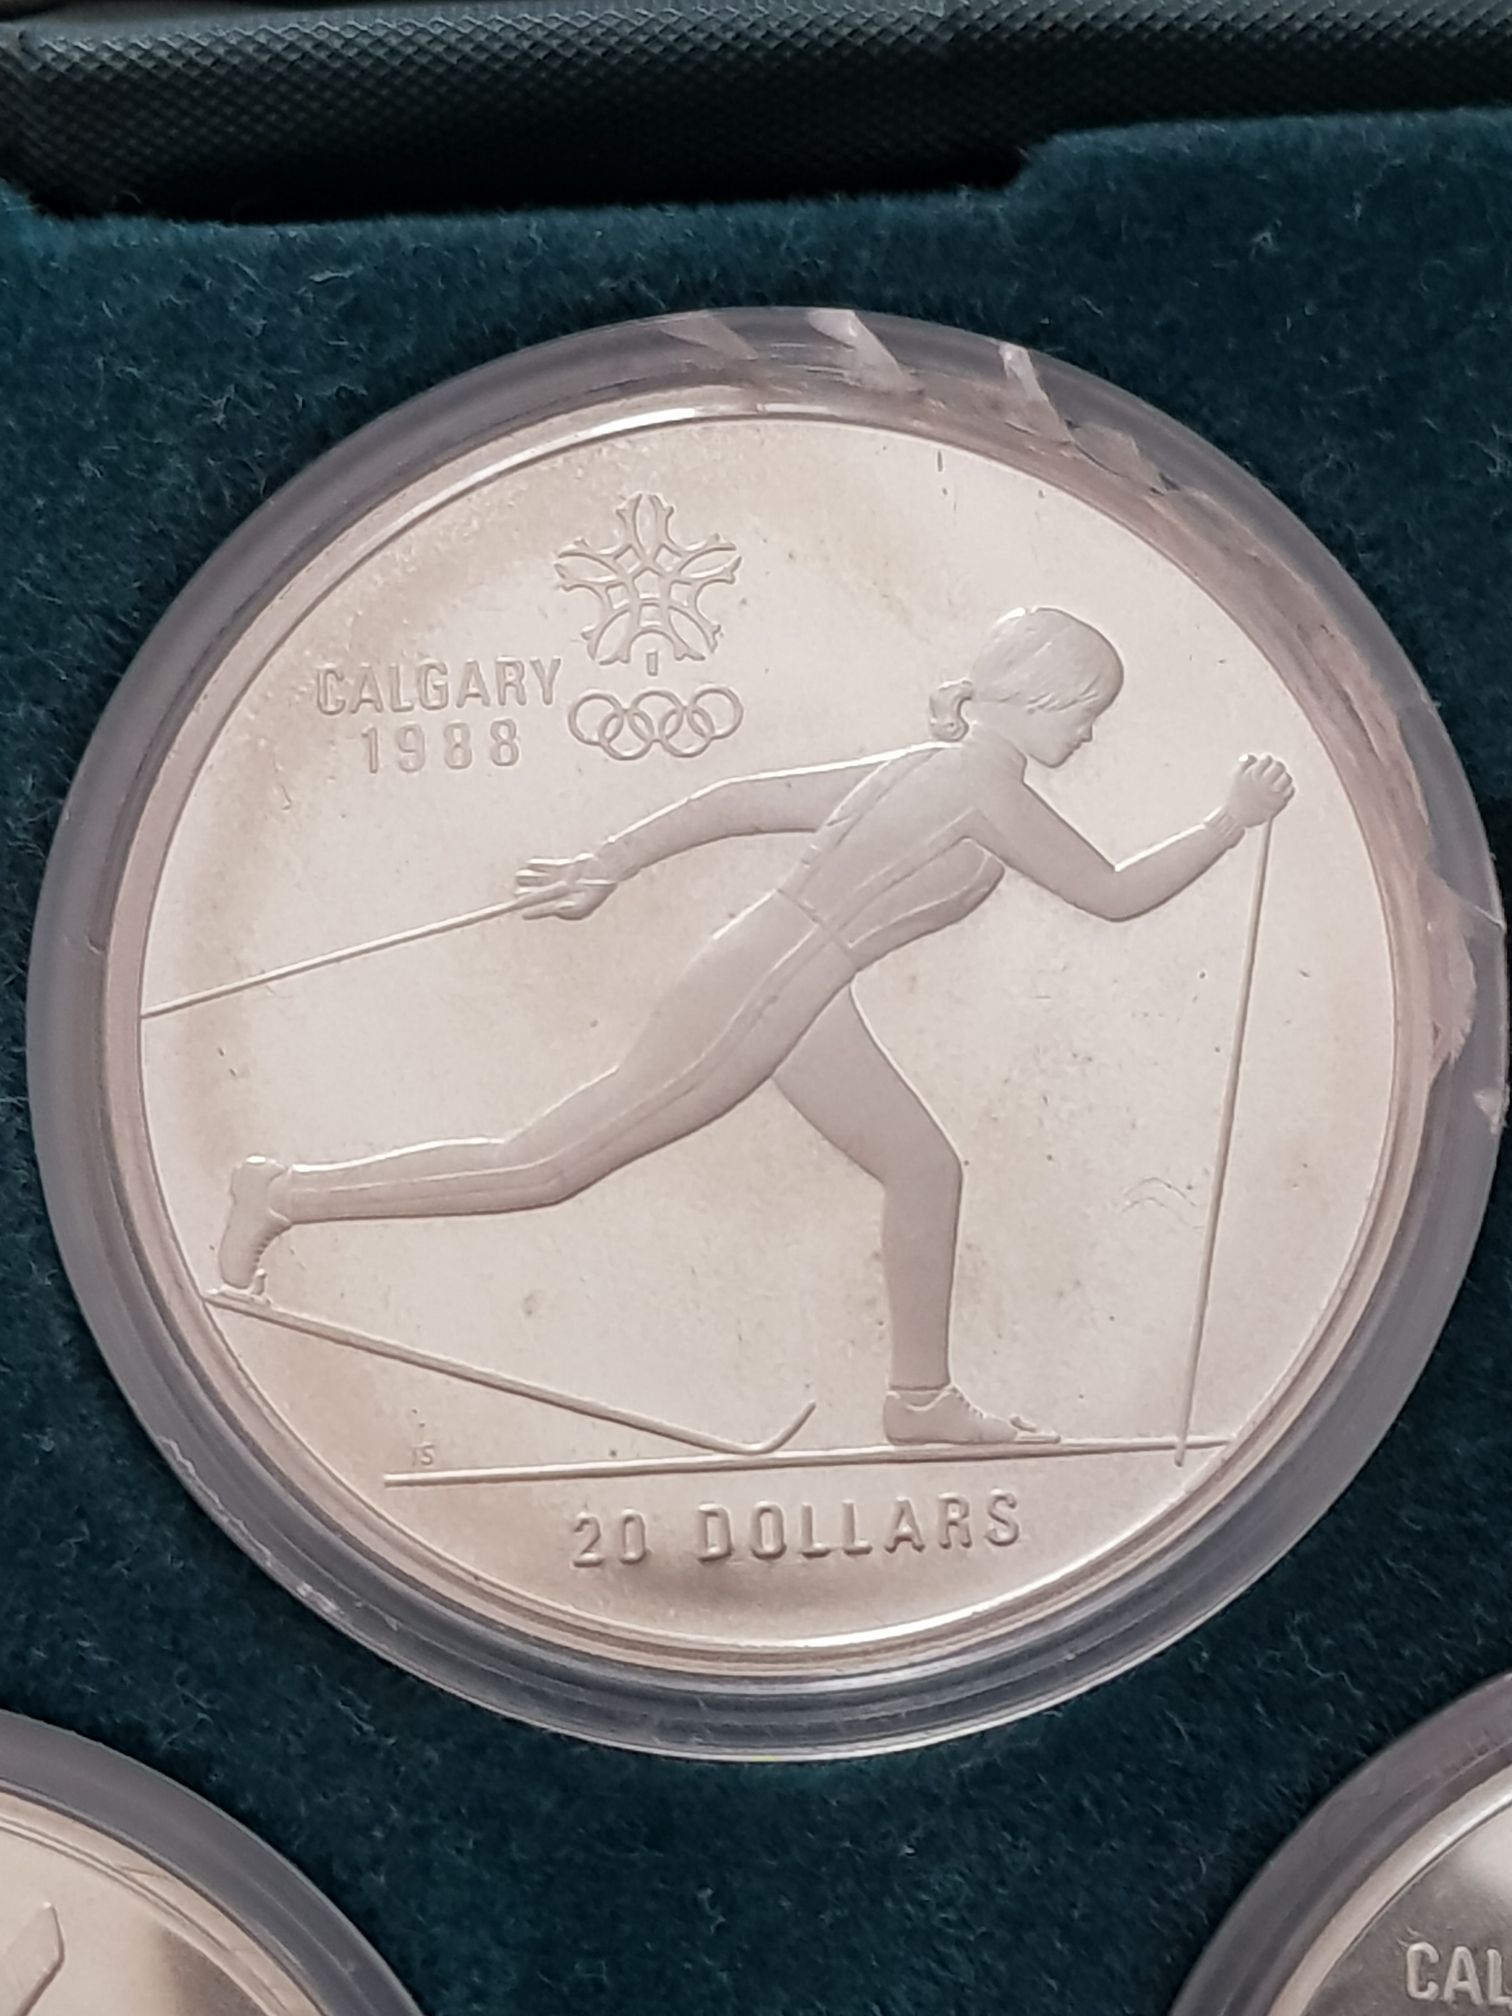 20 Dólares  coin collectible - Main Image 1